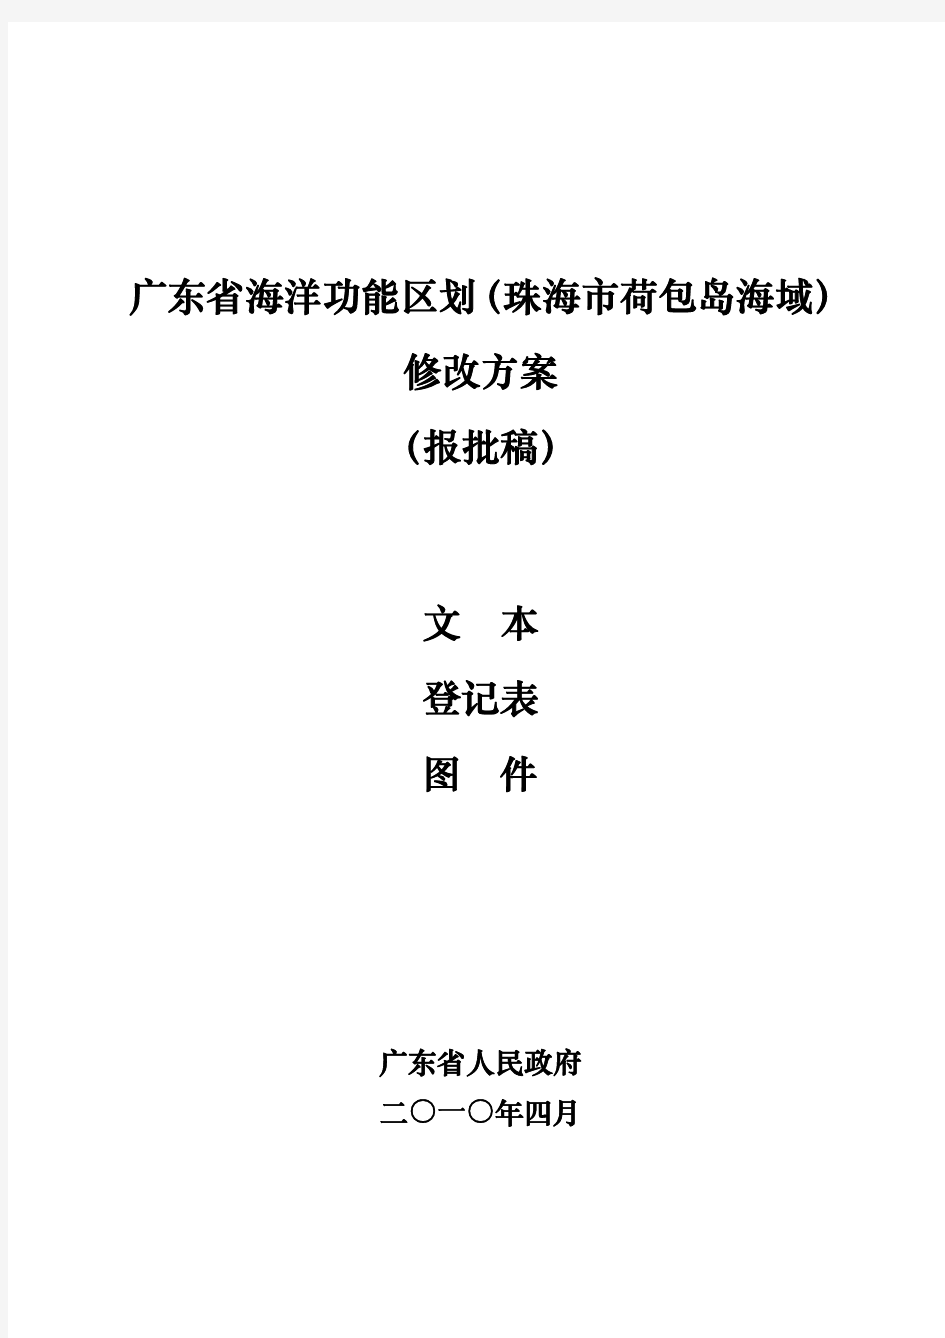 3广东省海洋功能区划(荷包岛海域)修改方案文本登记表图件(报批稿)-2010-5-14